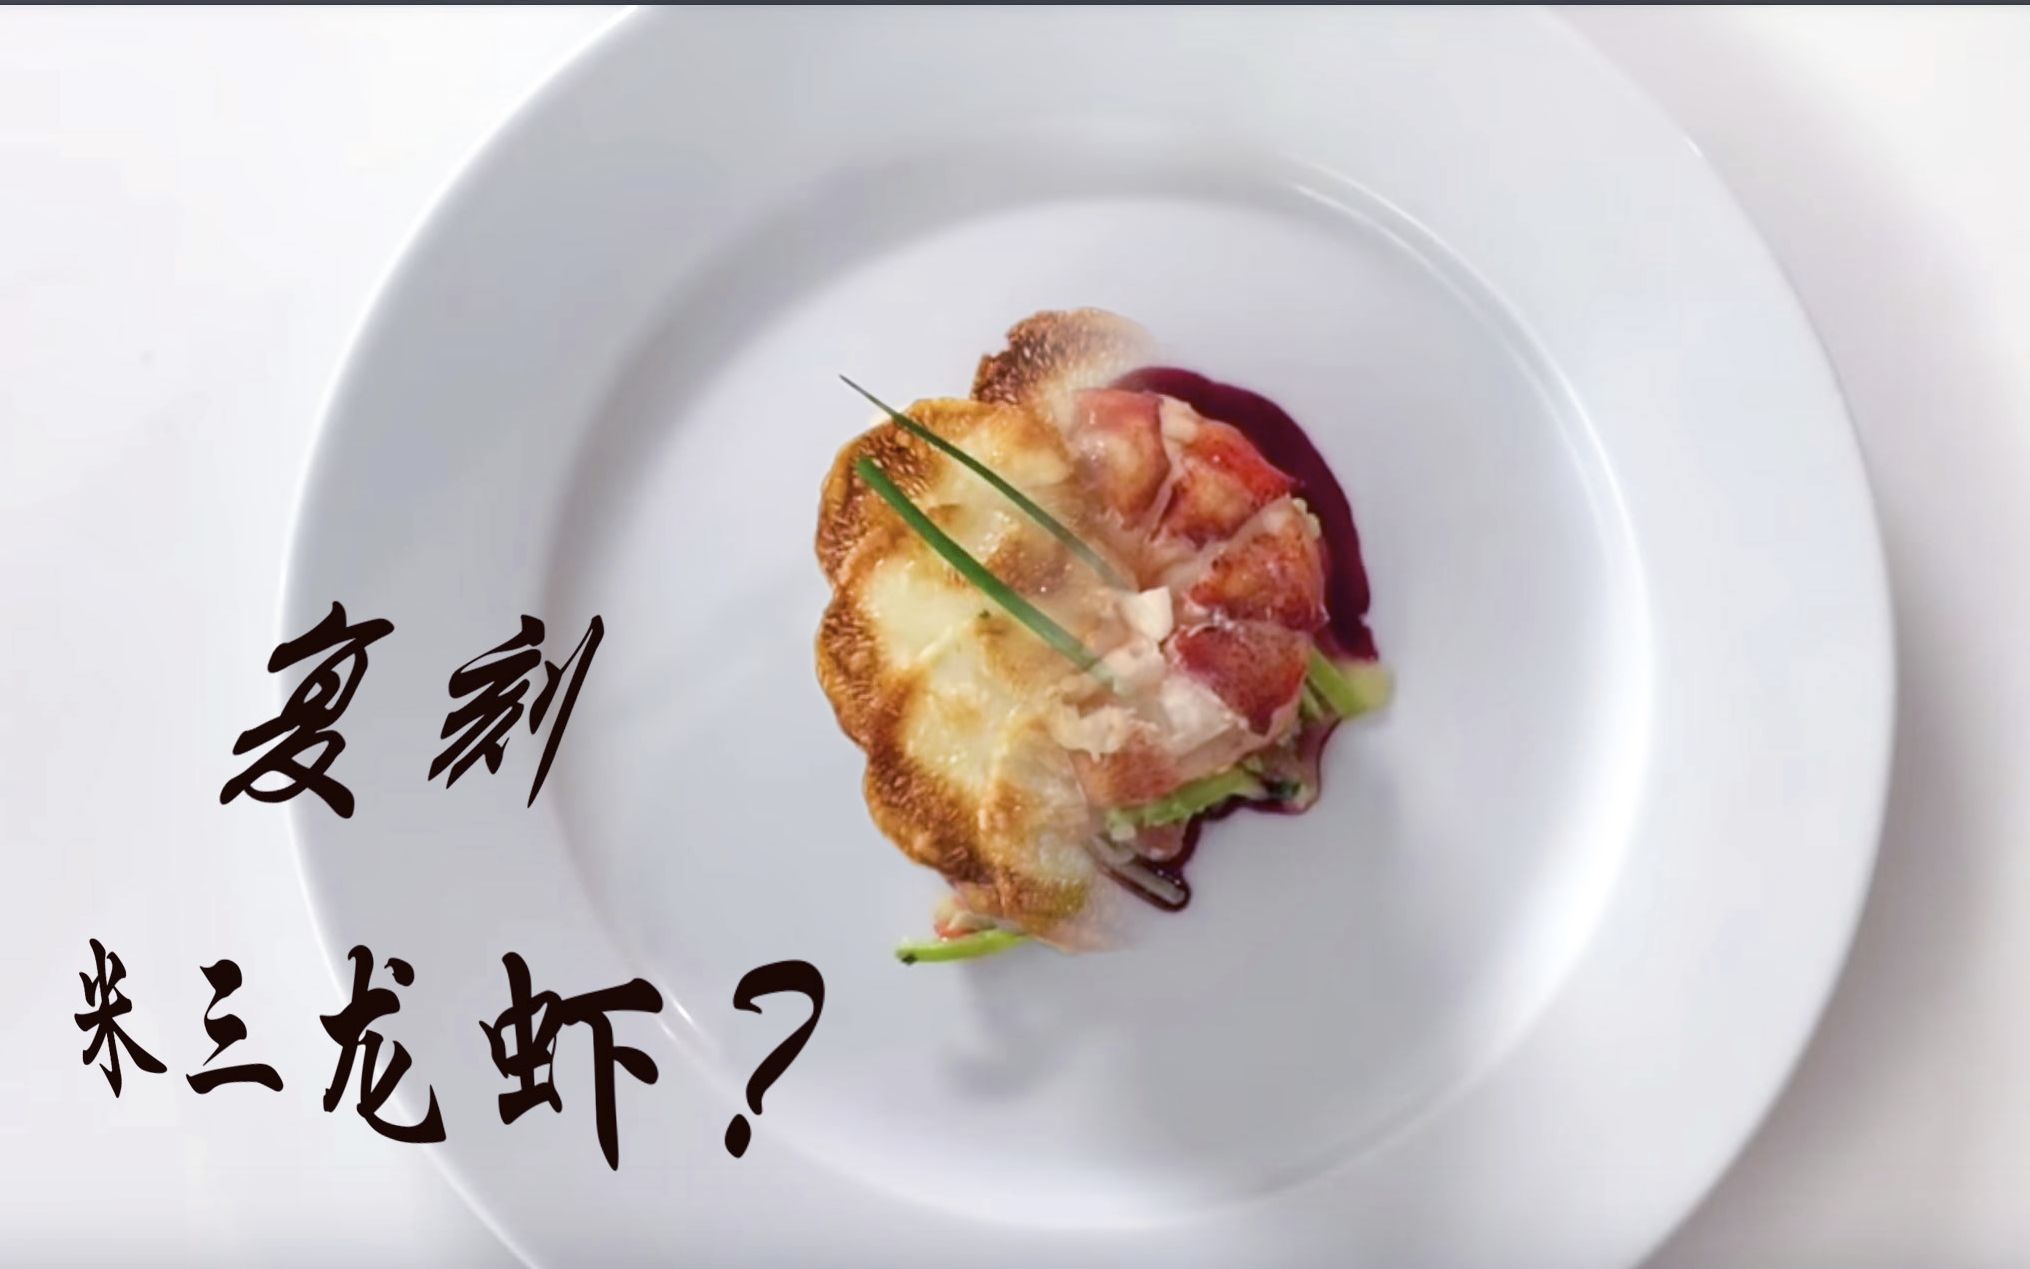 一个普通人能够复刻米三餐厅的龙虾菜吗？菜谱来自K神，法国洗衣房餐厅The French Laundry's